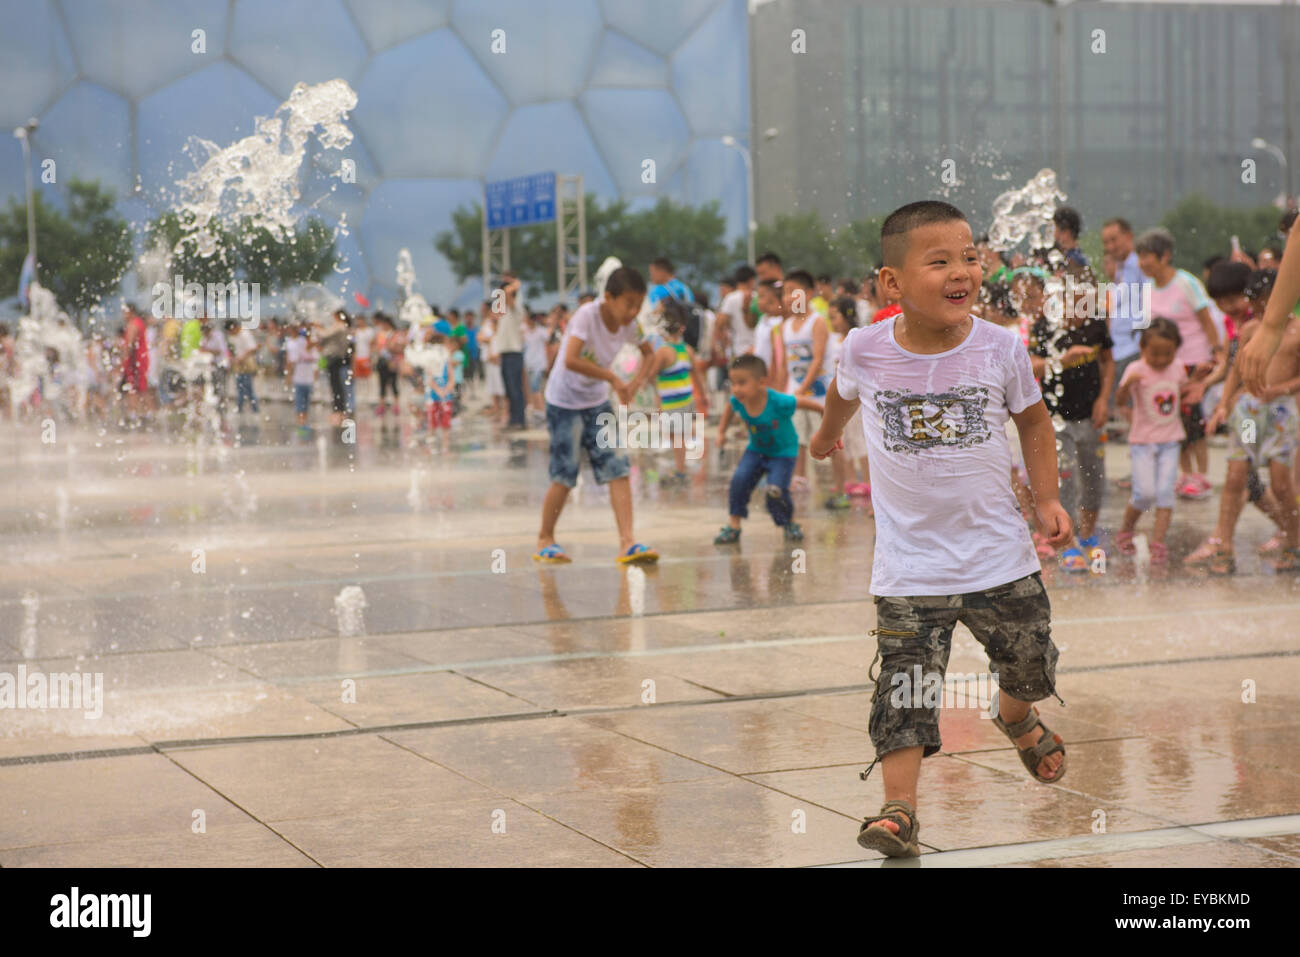 Les enfants chinois s'amusant à jouer parmi les têtes à l'eau le Parc olympique de Beijing - Juillet 2015 Banque D'Images